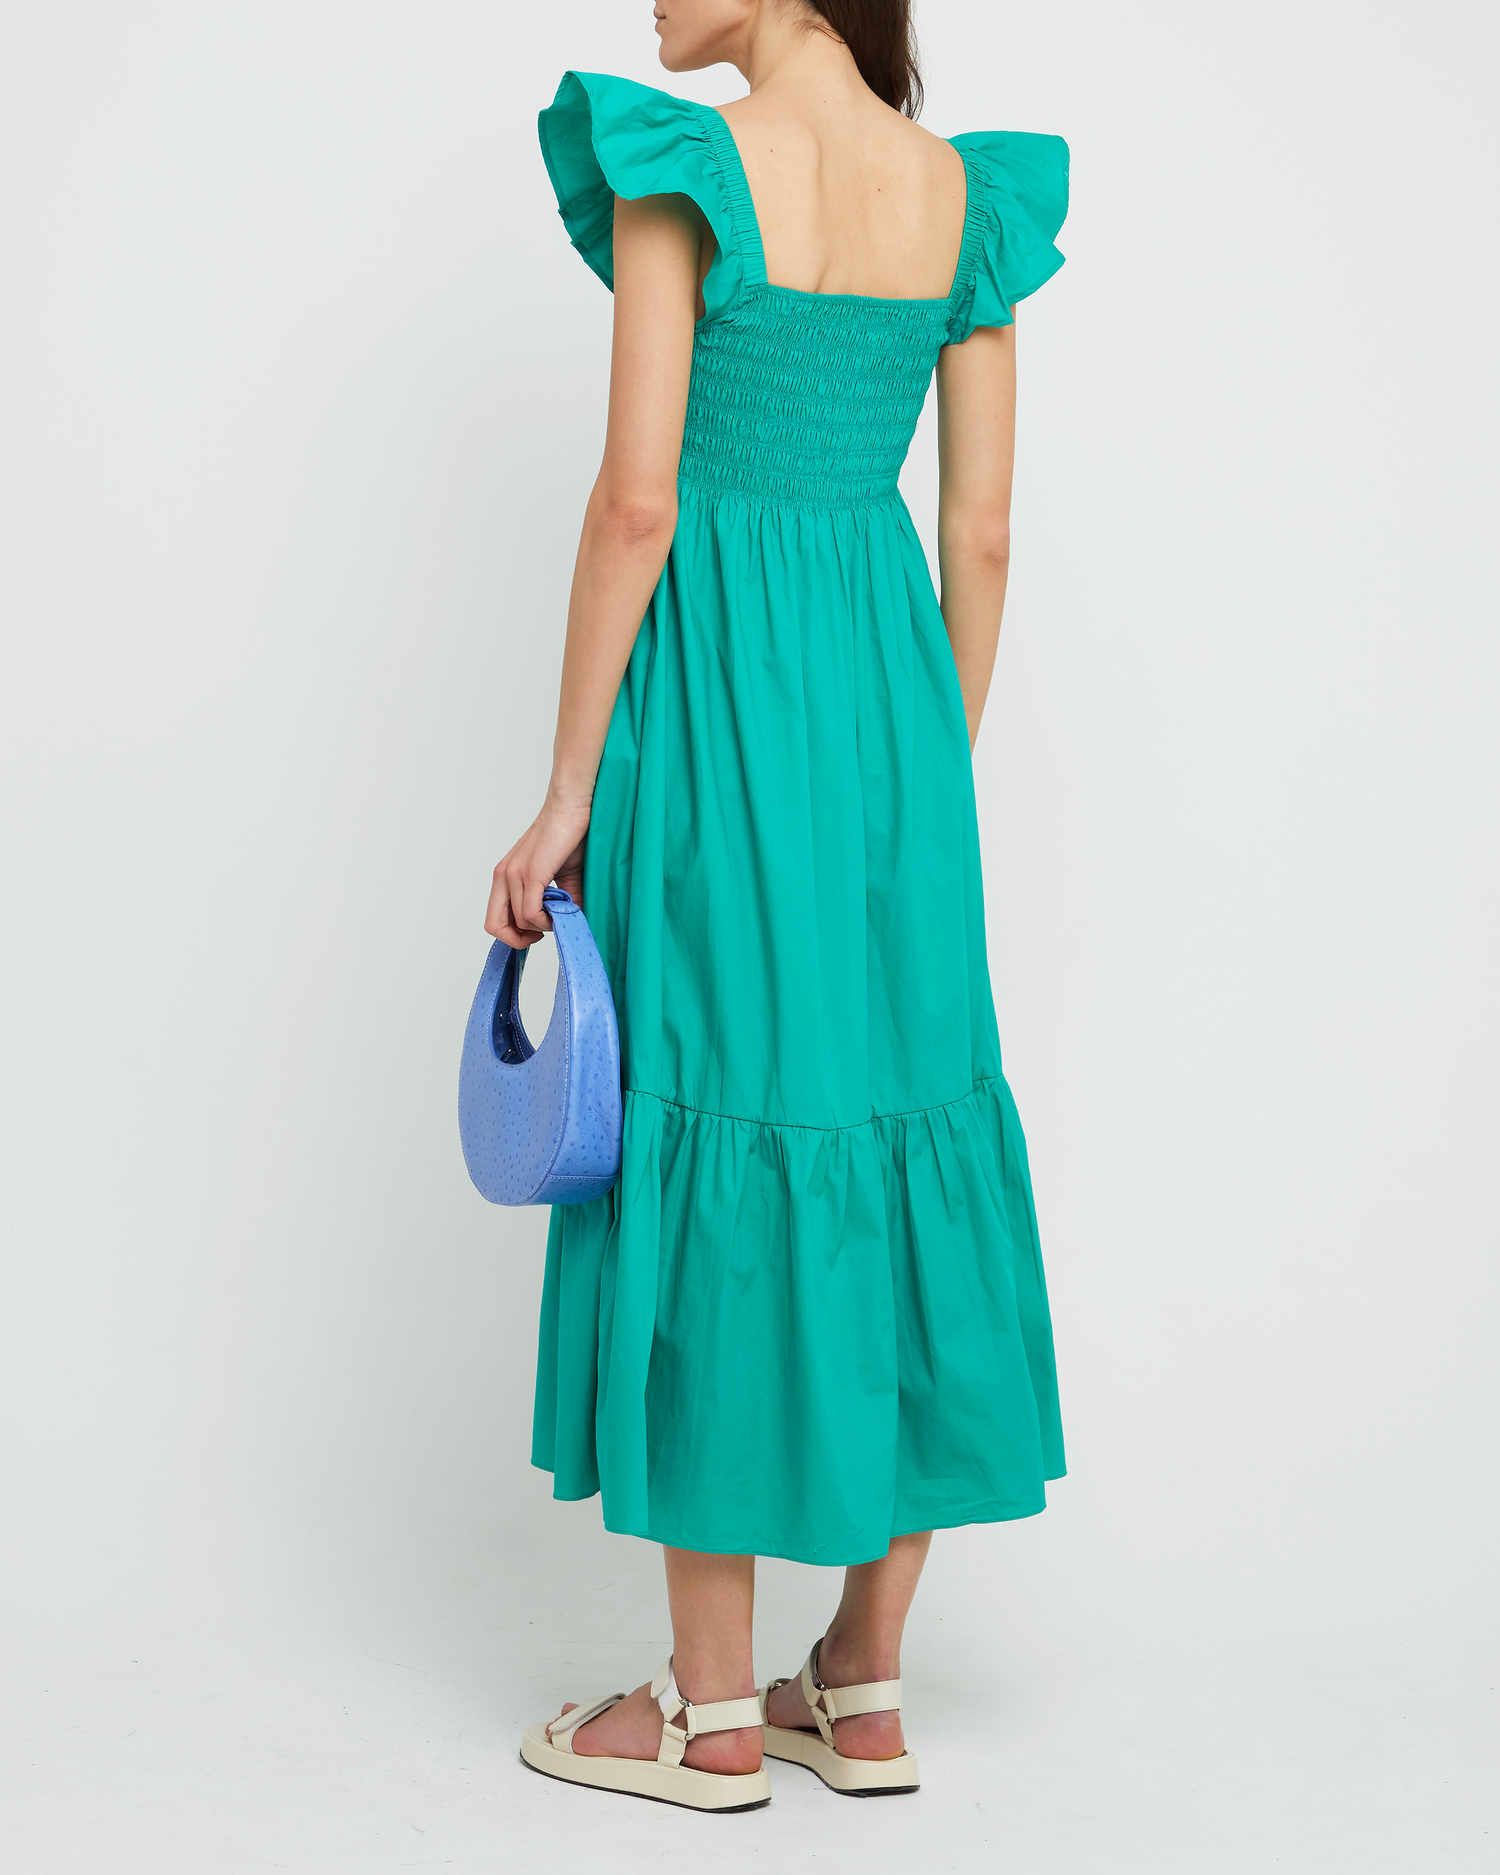 Second image of Tuscany Dress, a green maxi dress, smocked bodice, ruffled cap sleeves, pockets